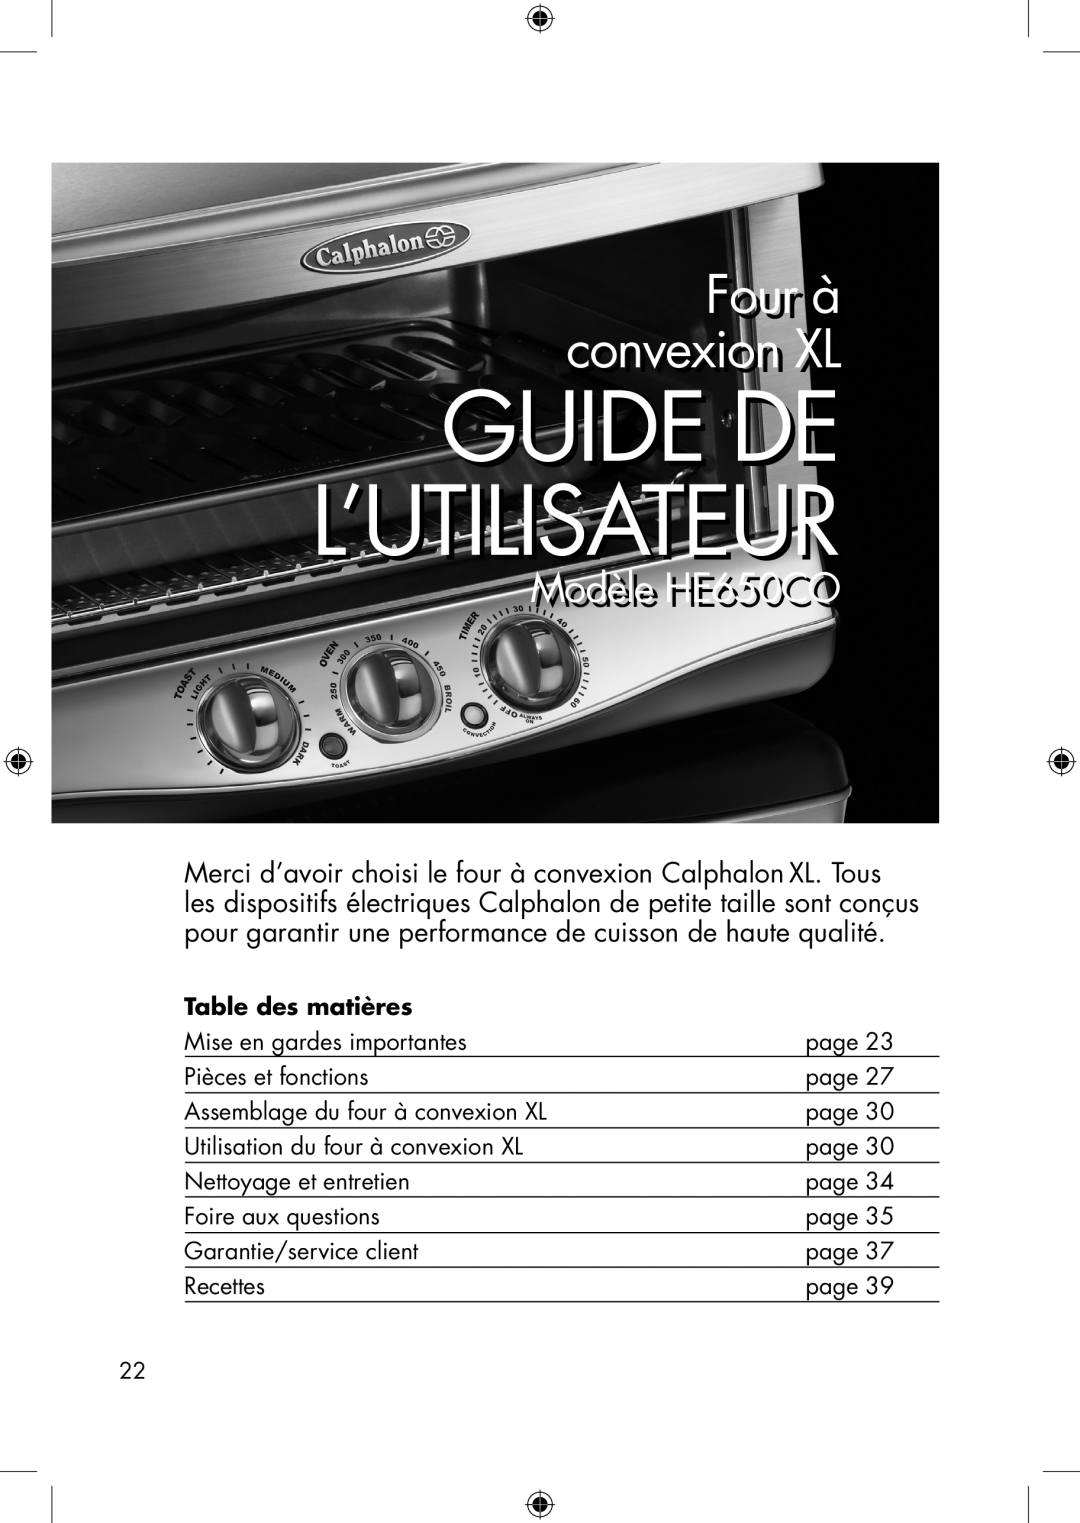 Calphalon he650co manual Fourr à convexioni XL, Modèlele HE650CO, Guide De L’Utilisateur, Table des matières 